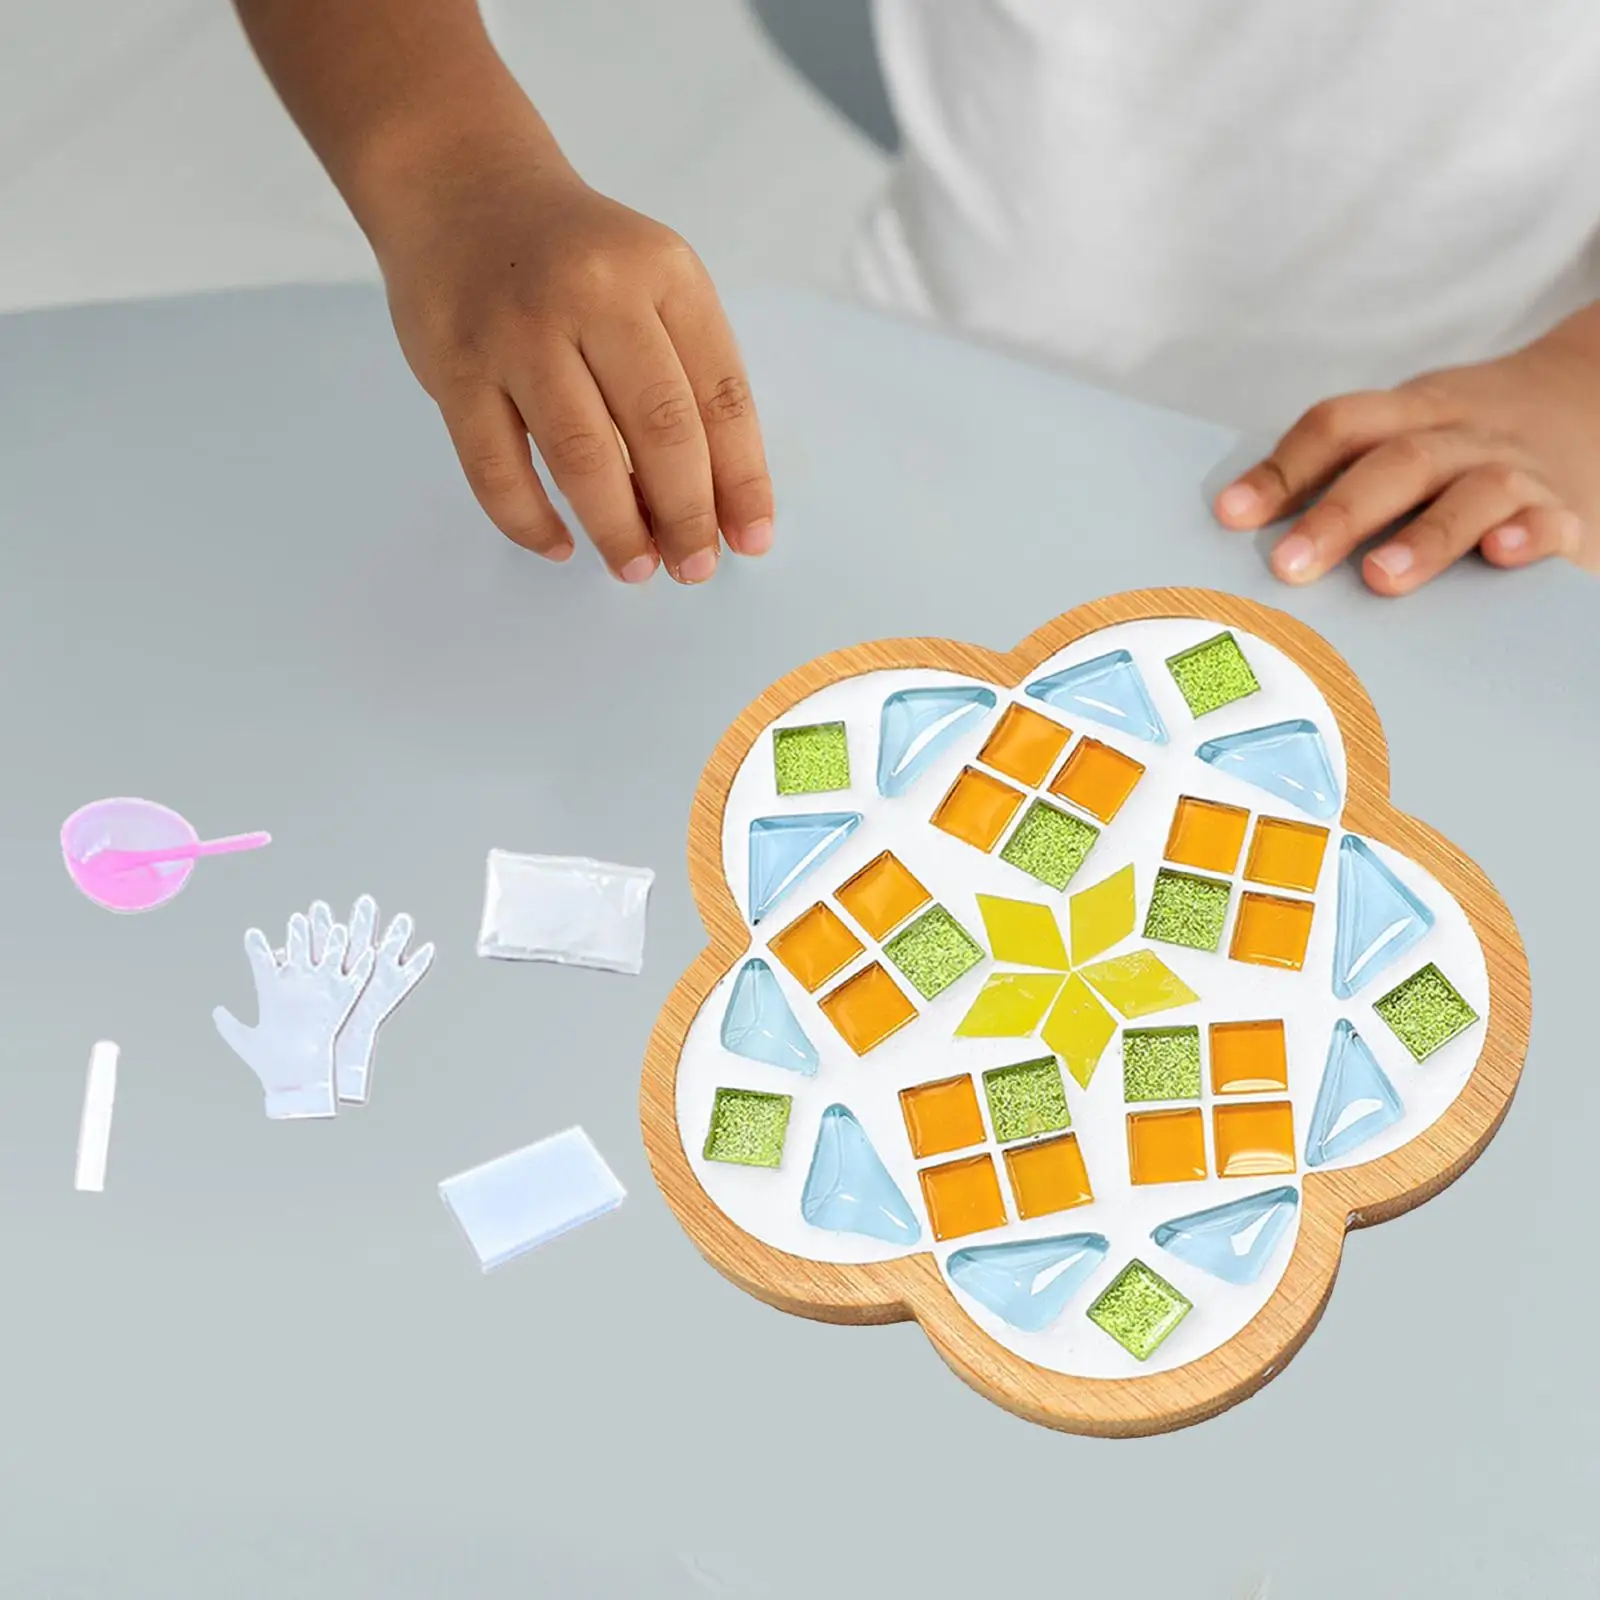 DIY Mosaic Coaster Cup Holder Creative Mosaic Materials Holiday Gift Place